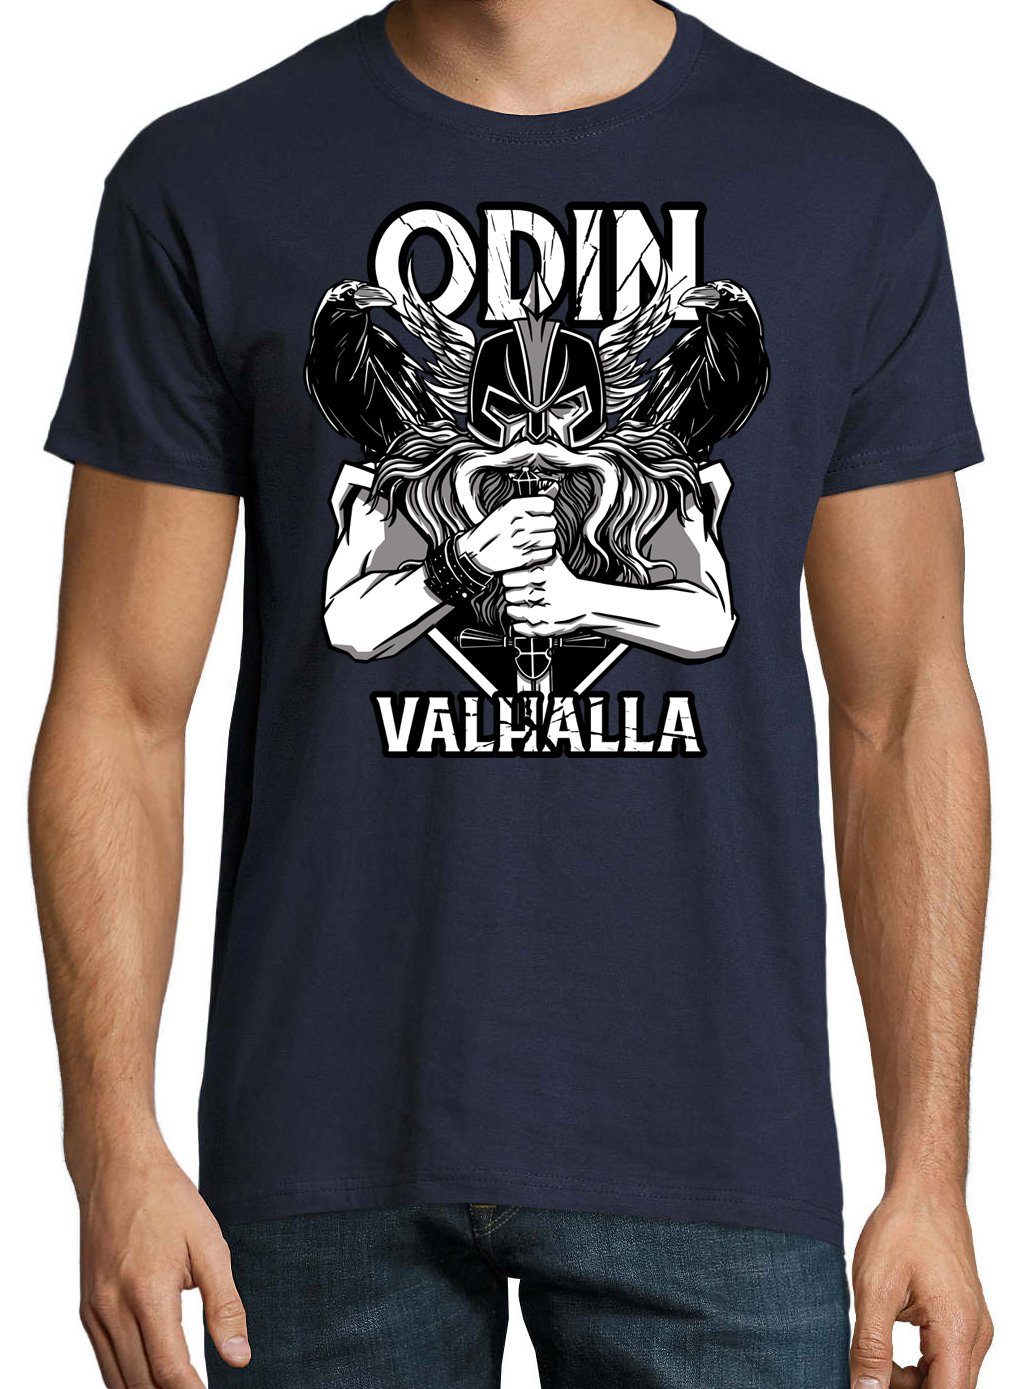 Navy Odin mit T-Shirt Spruch trendigem Youth Designz Valhalla T-Shirt Herren